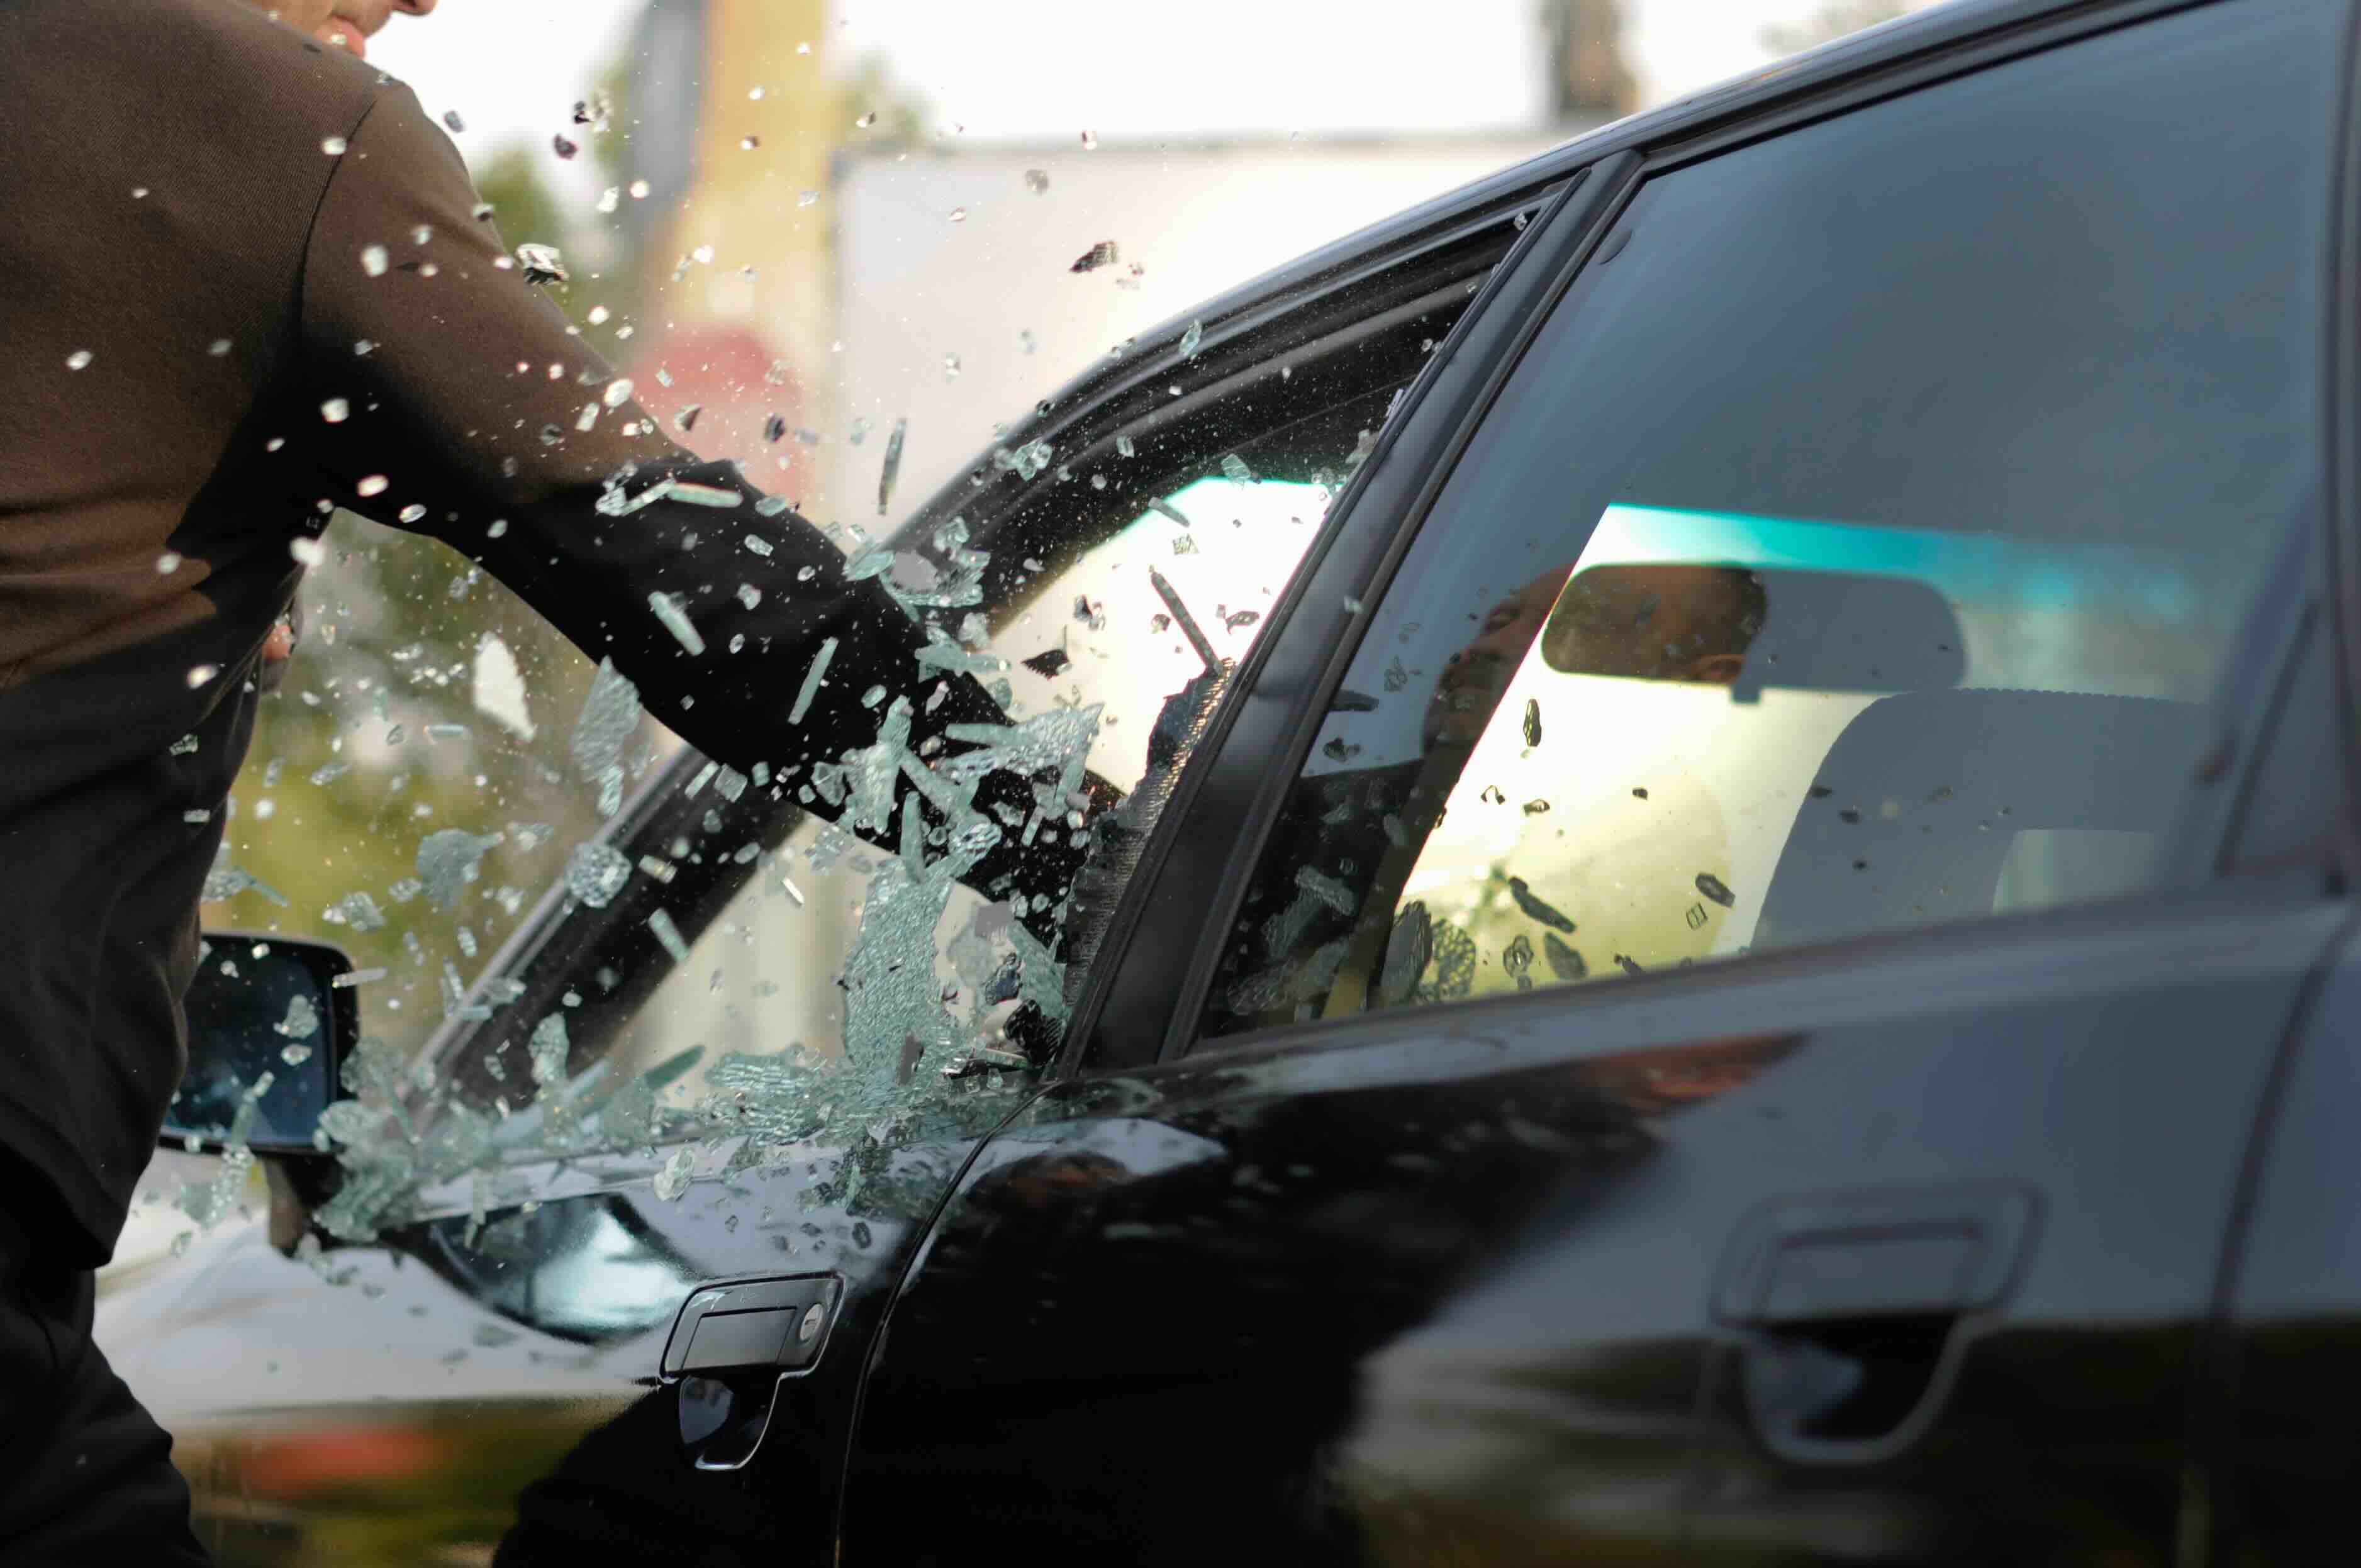 AMIS: violentos, 72.48 por ciento de robos de vehículos asegurados en Puebla